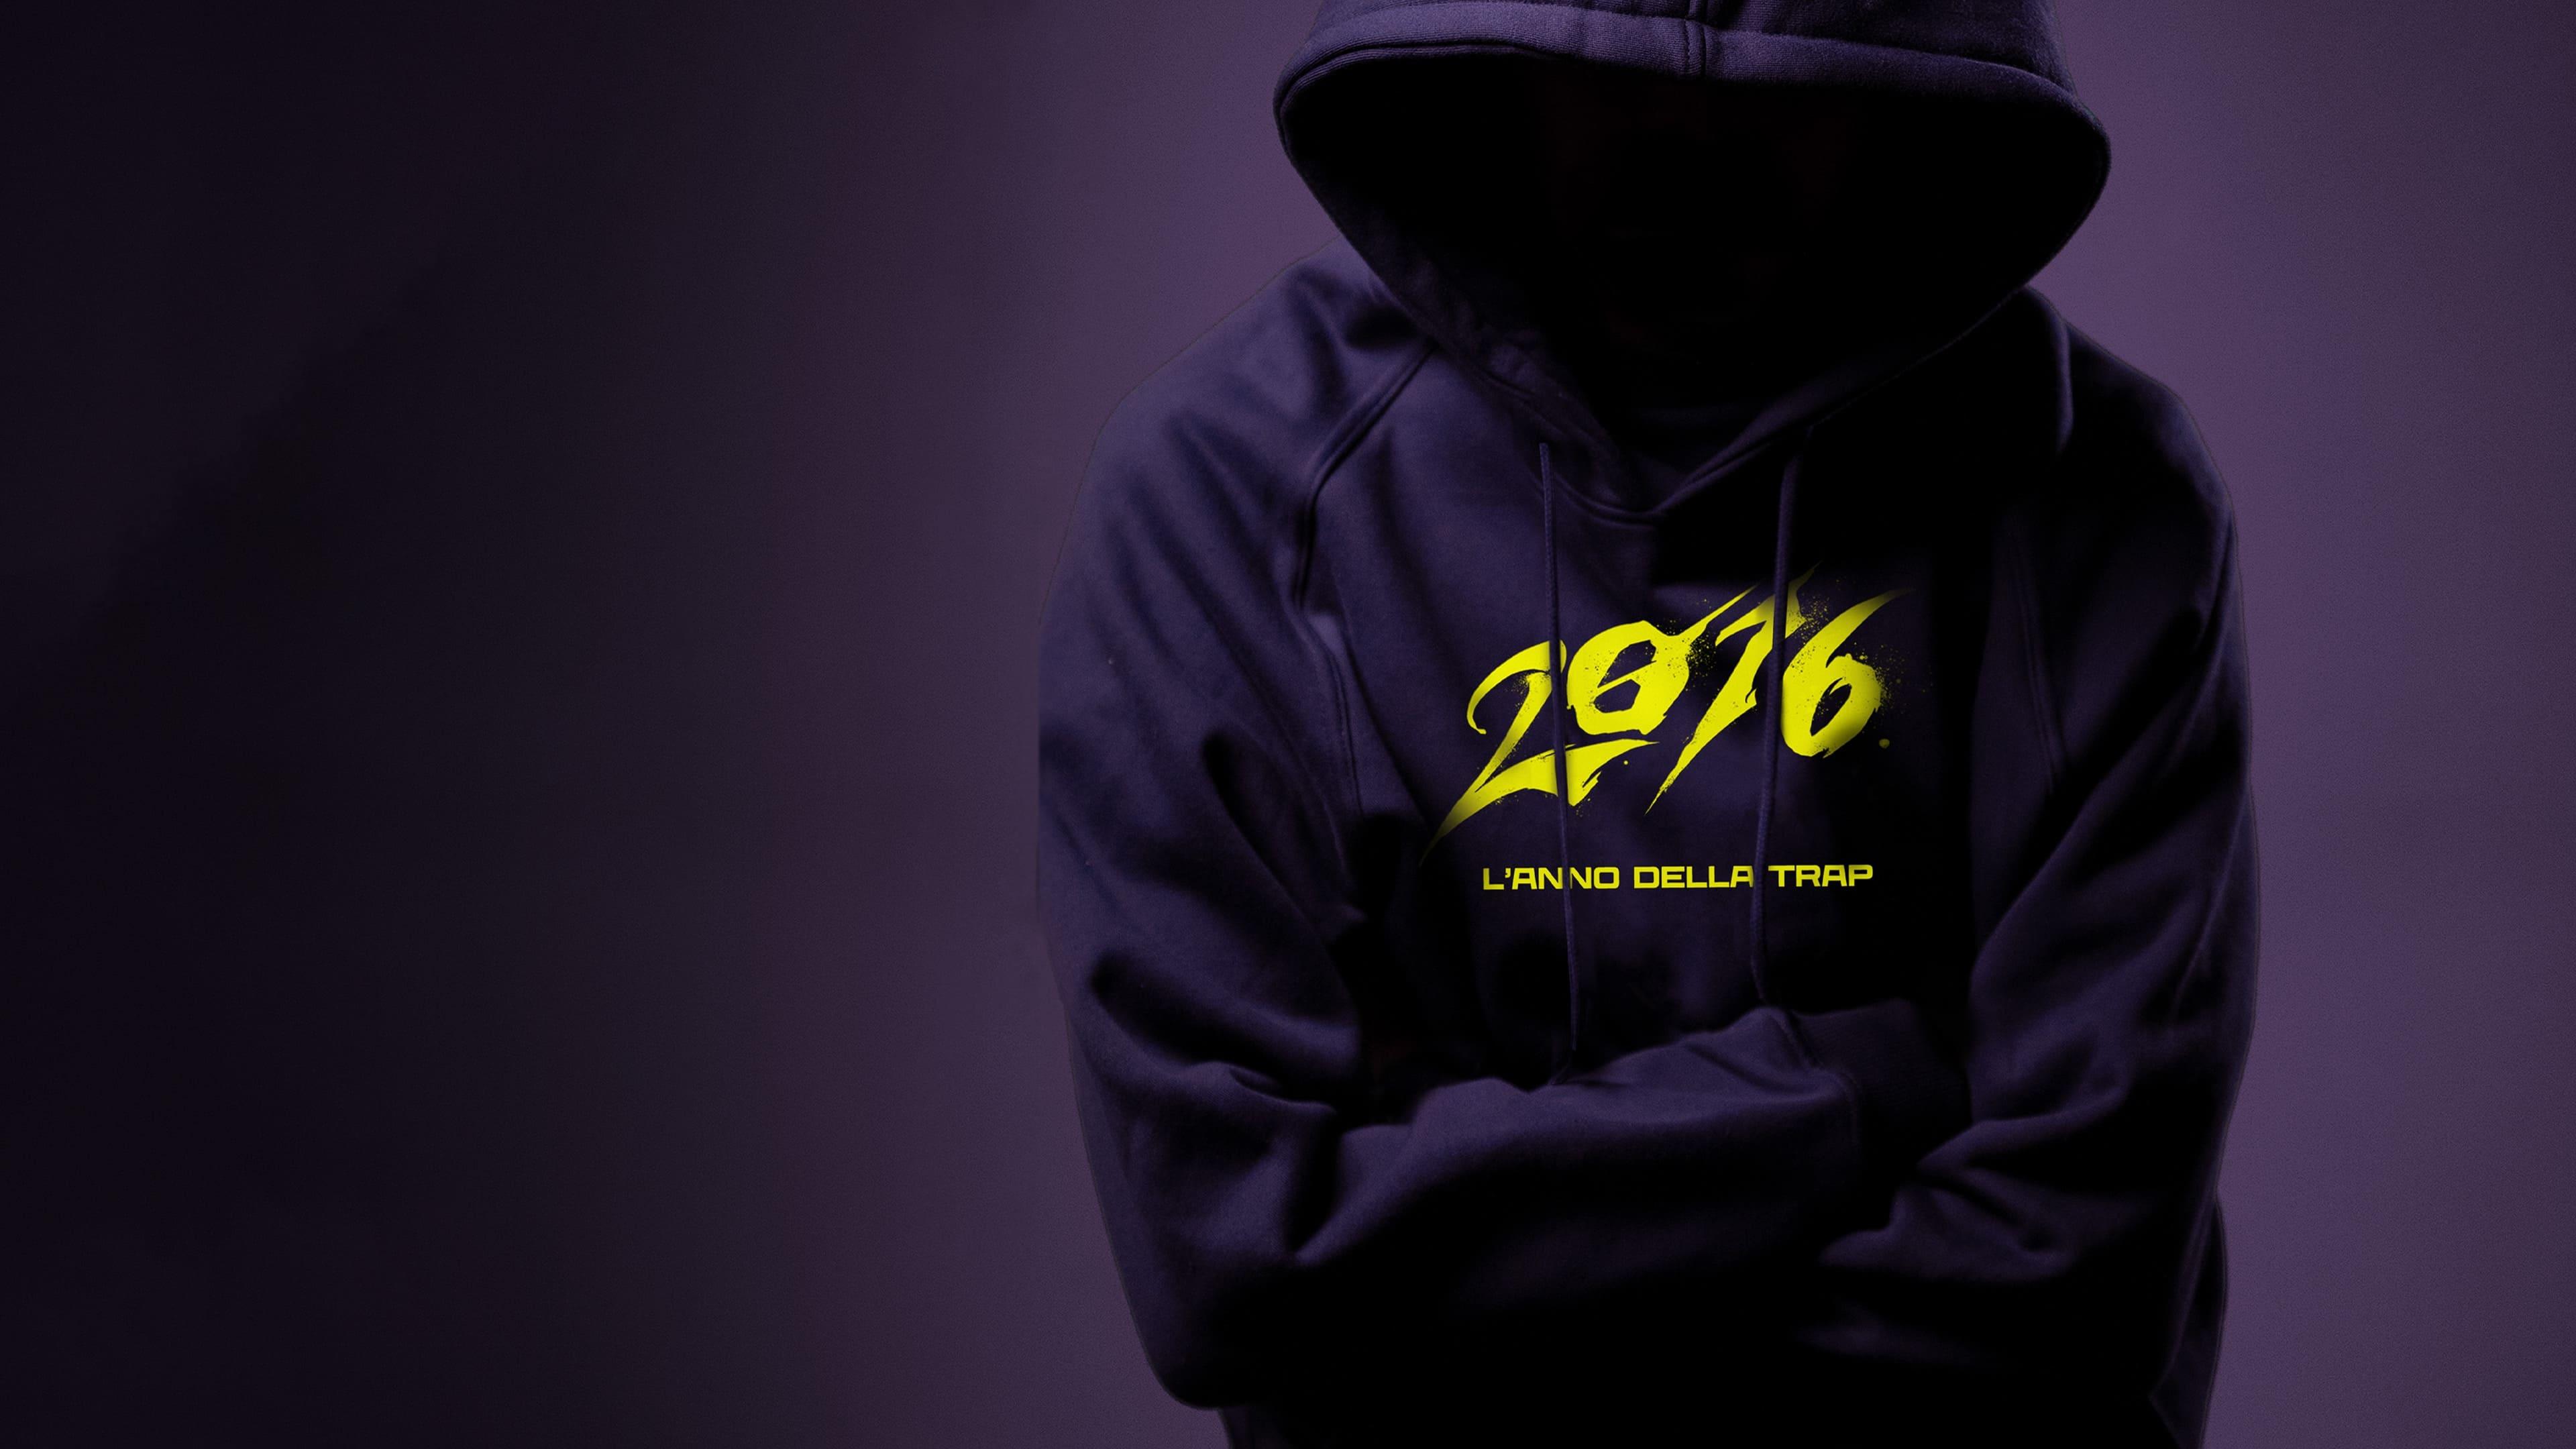 2016 - L'anno della trap backdrop